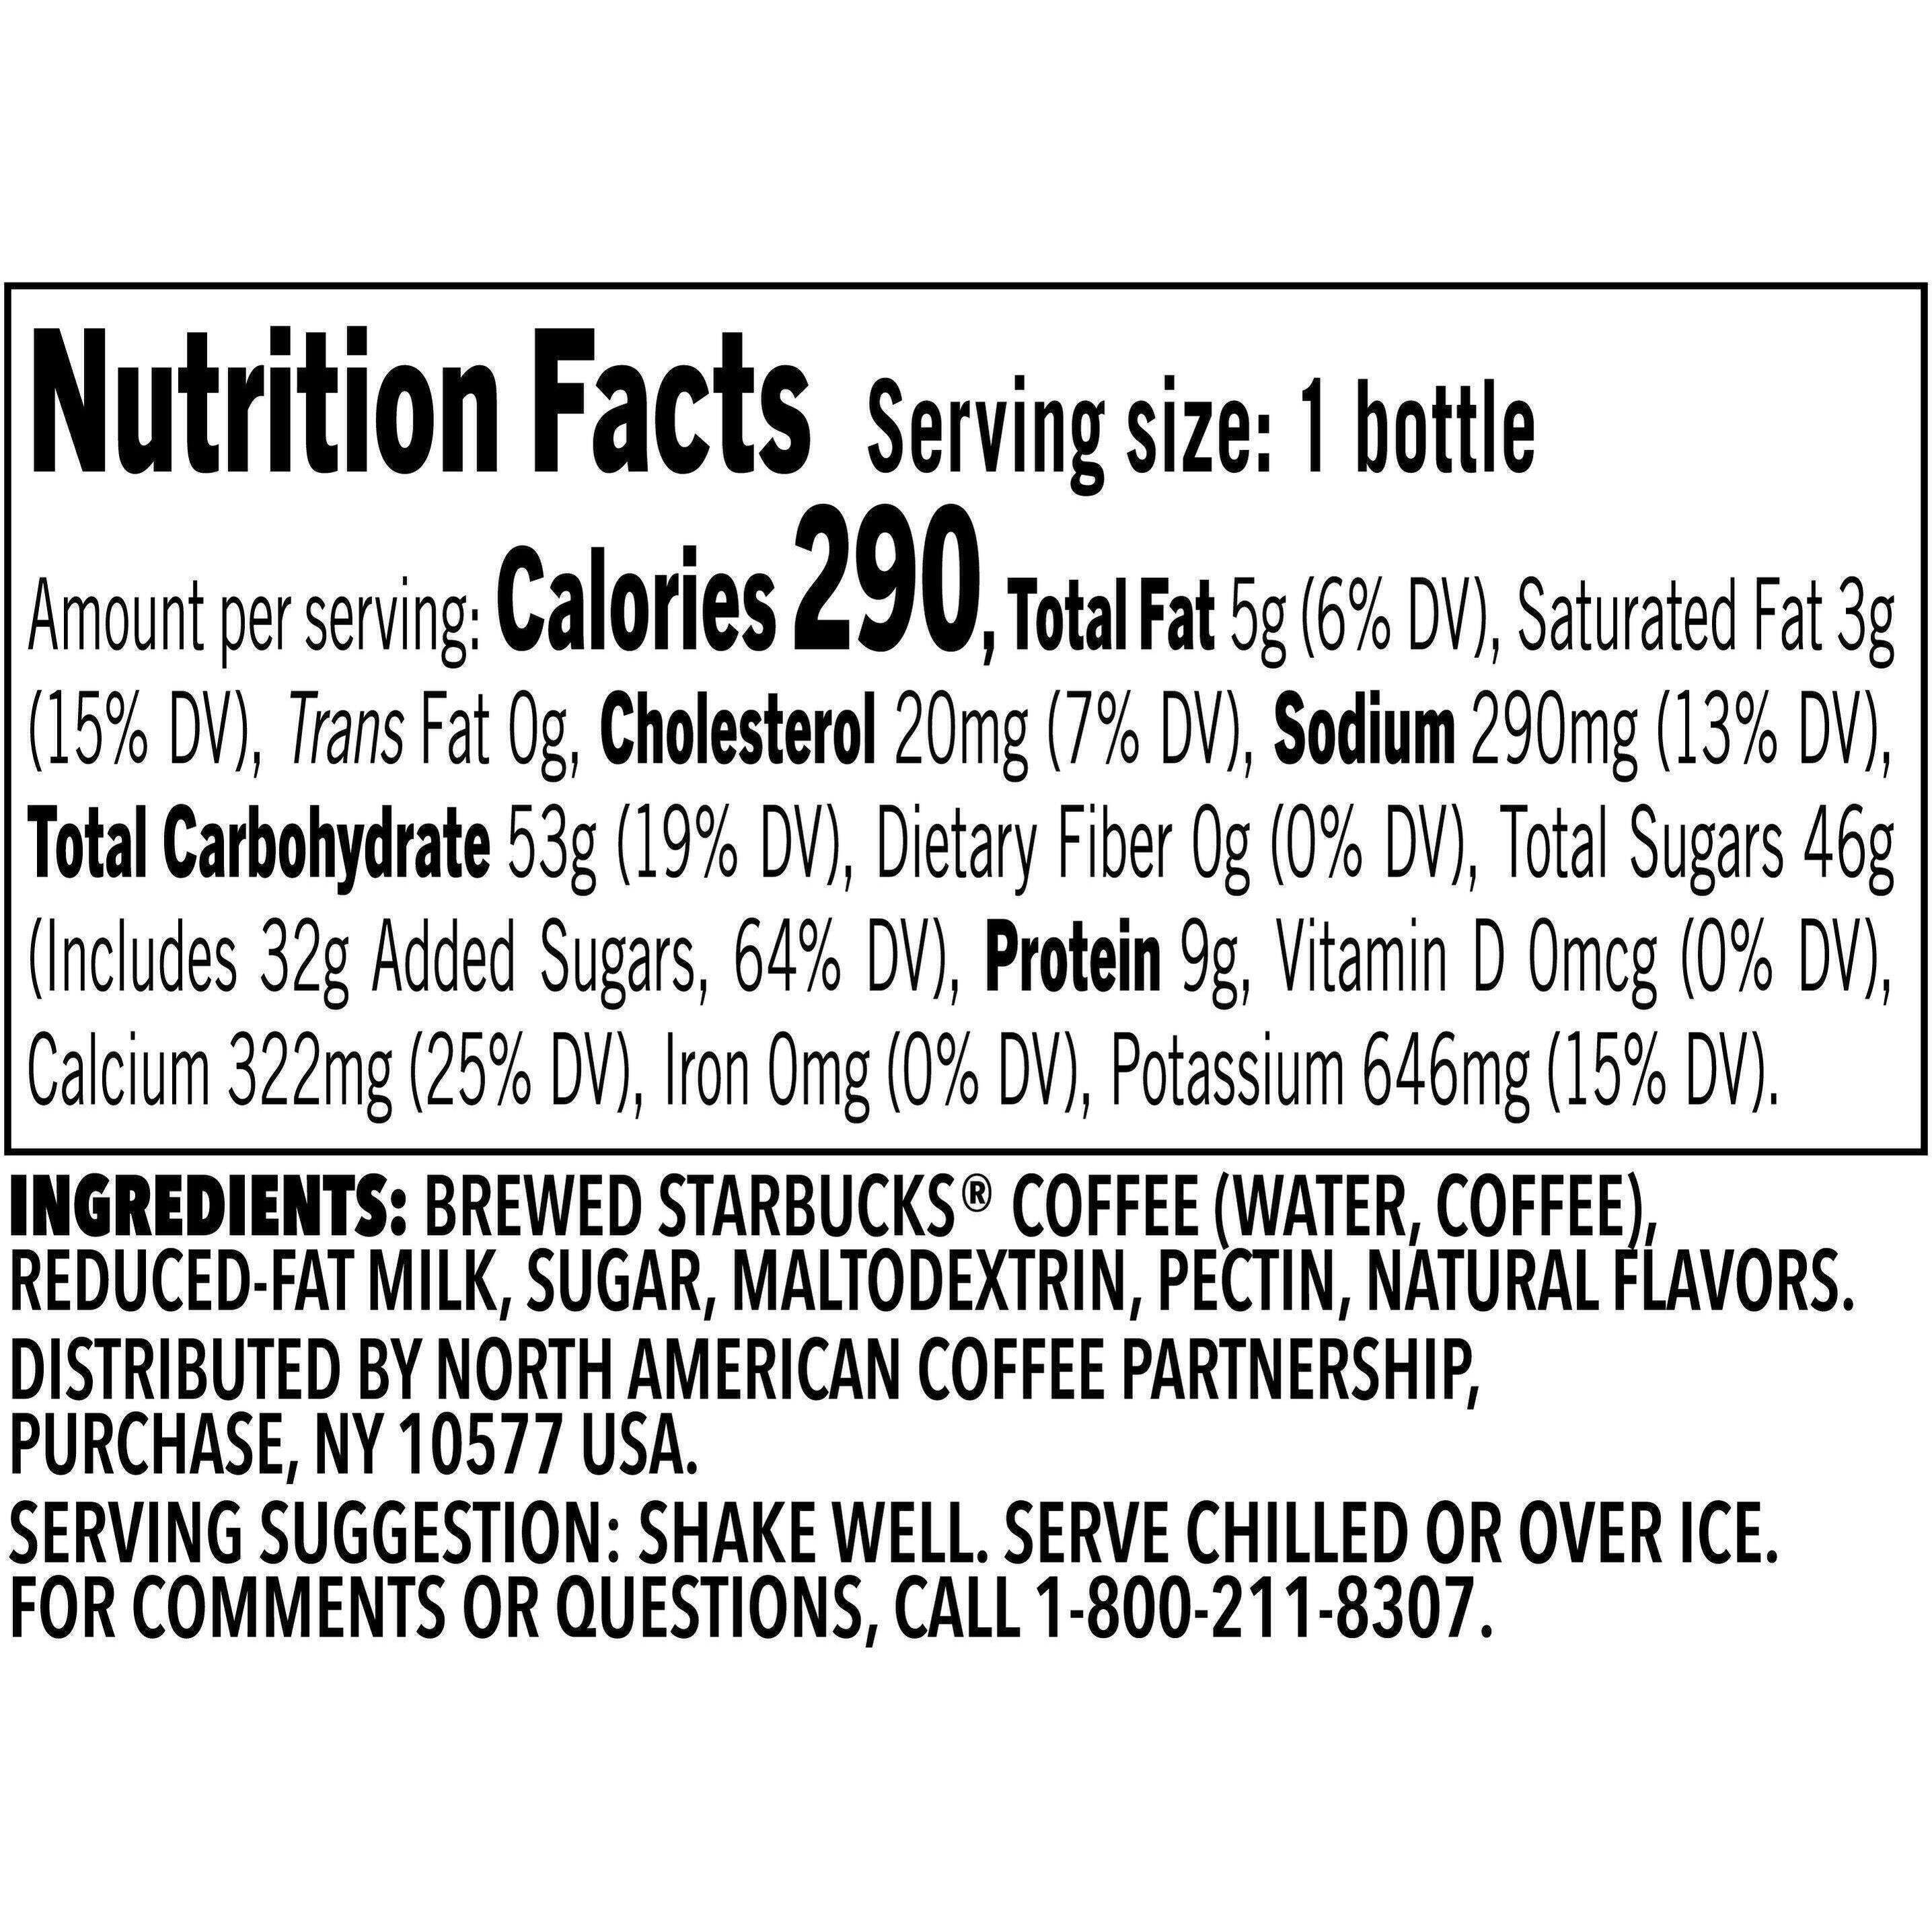 Image describing nutrition information for product Frappuccino Vanilla